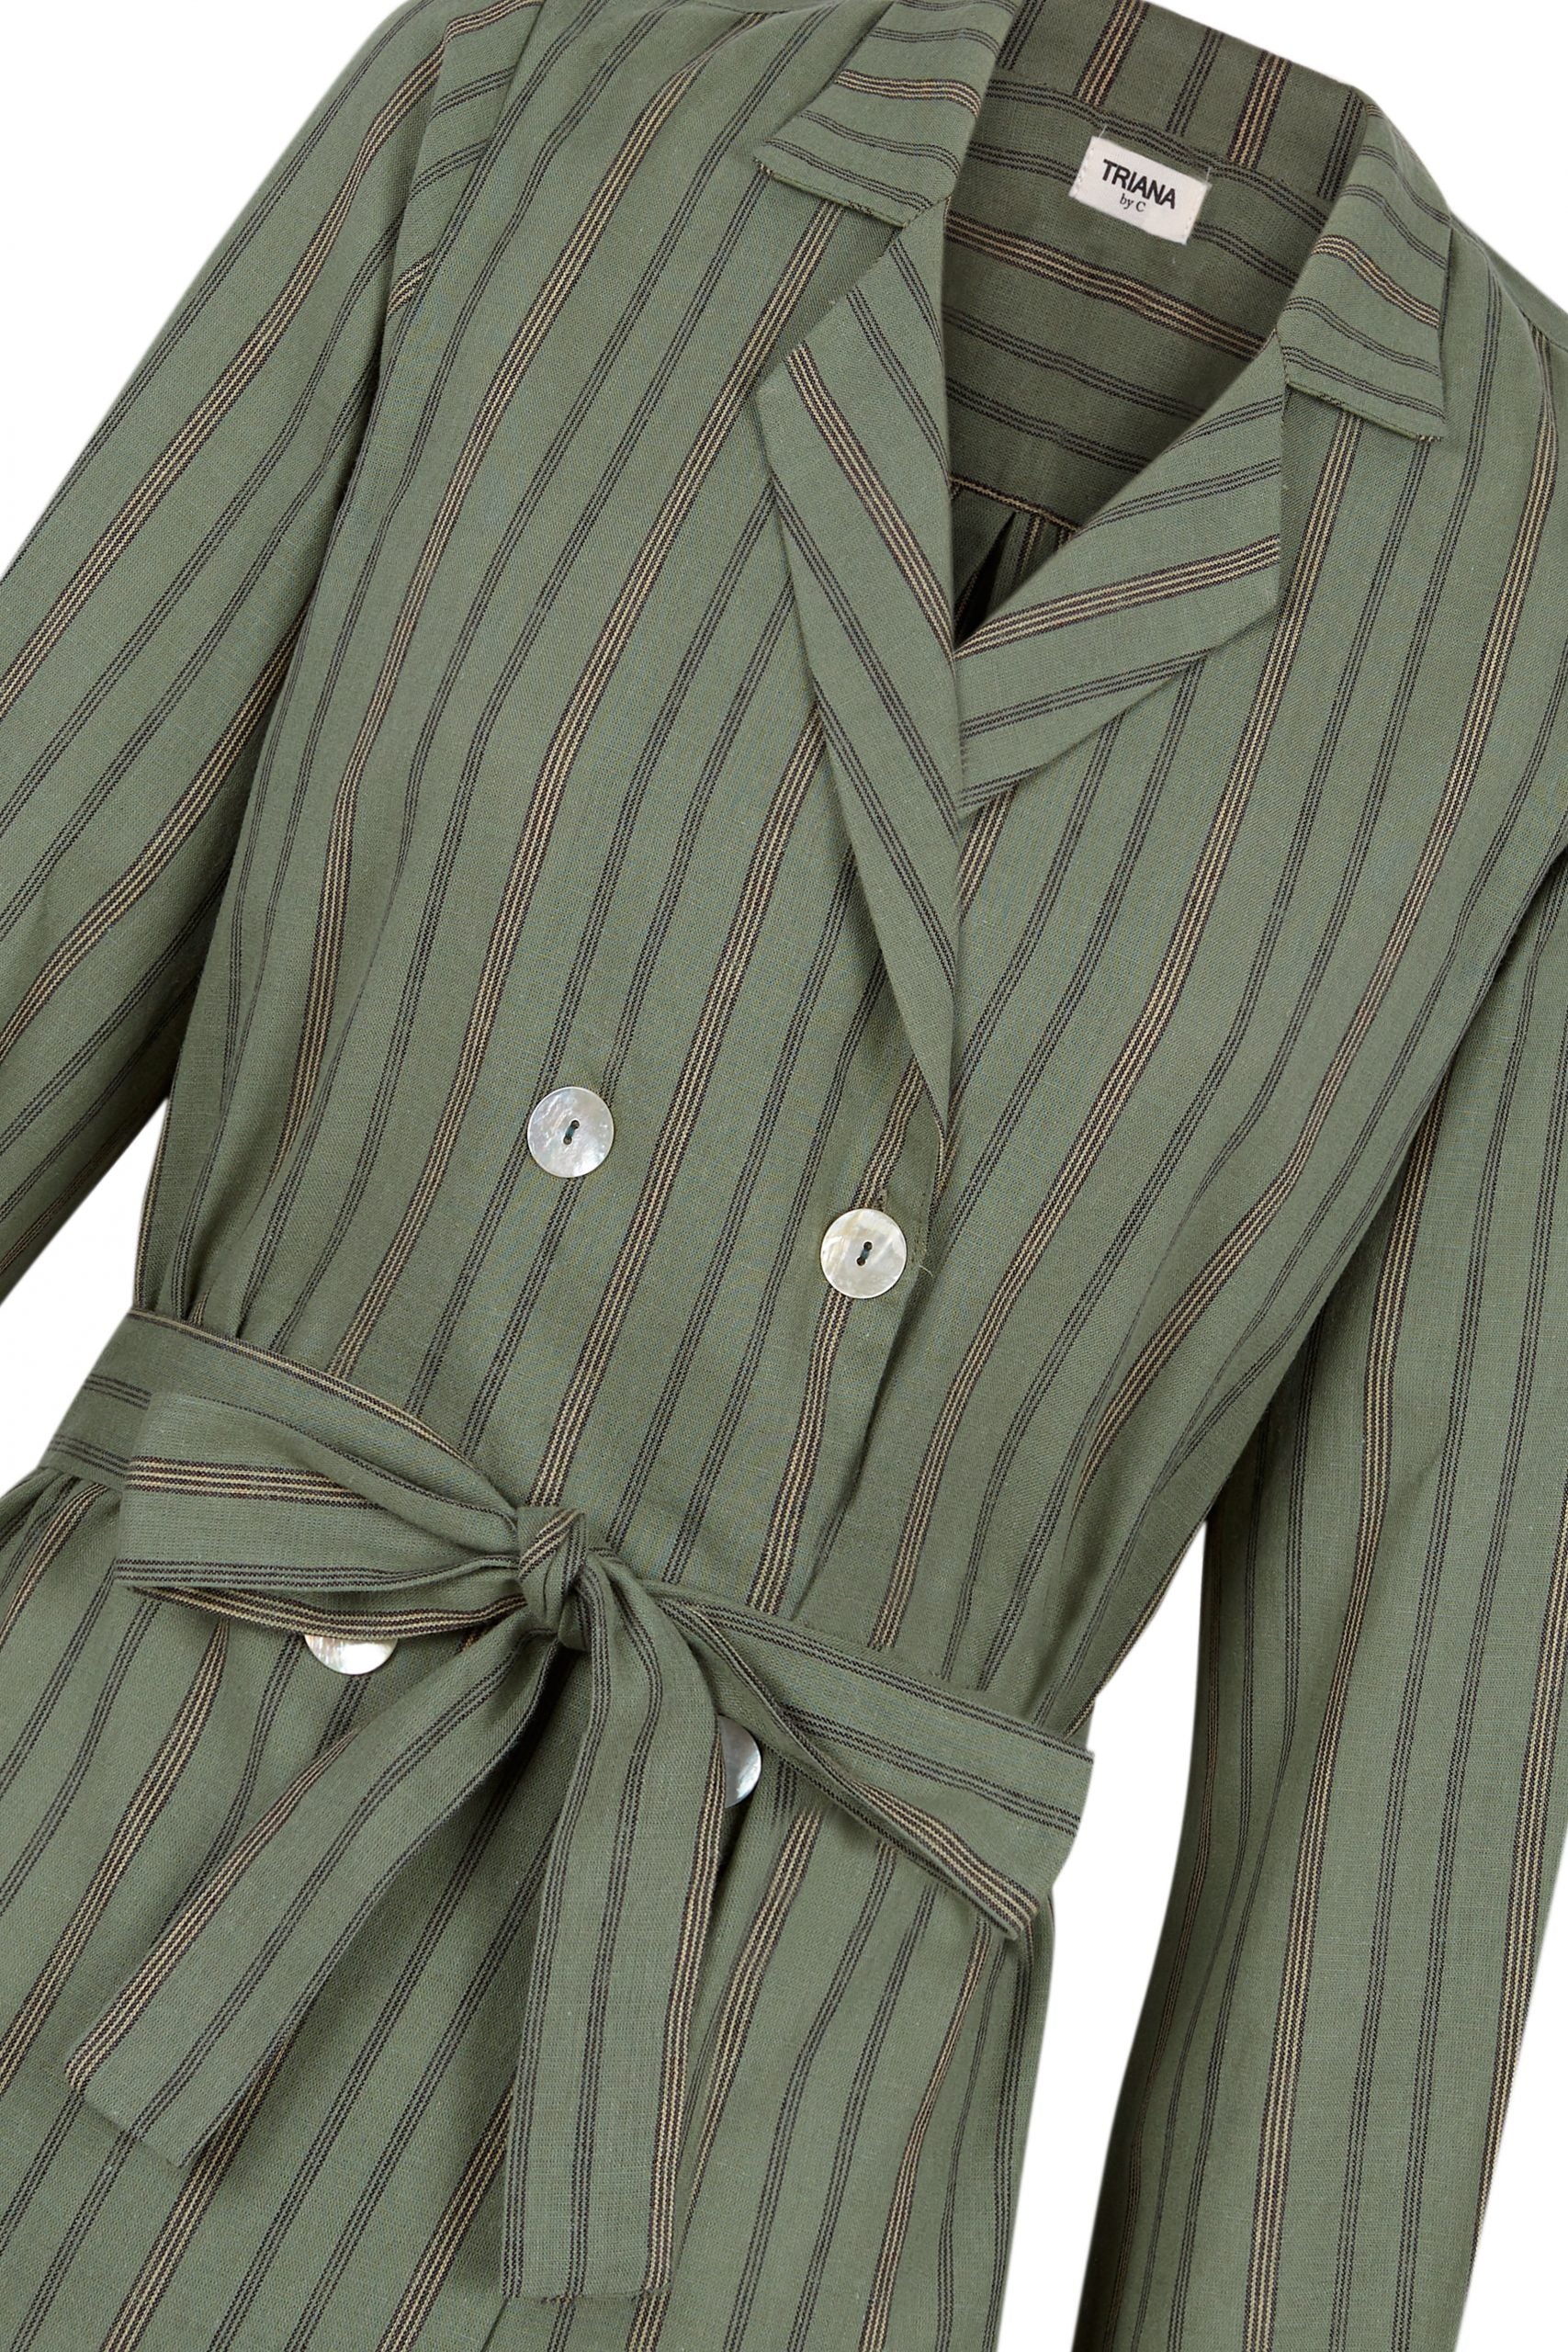 Blouse/jacket CALABRIA green khaki stripe